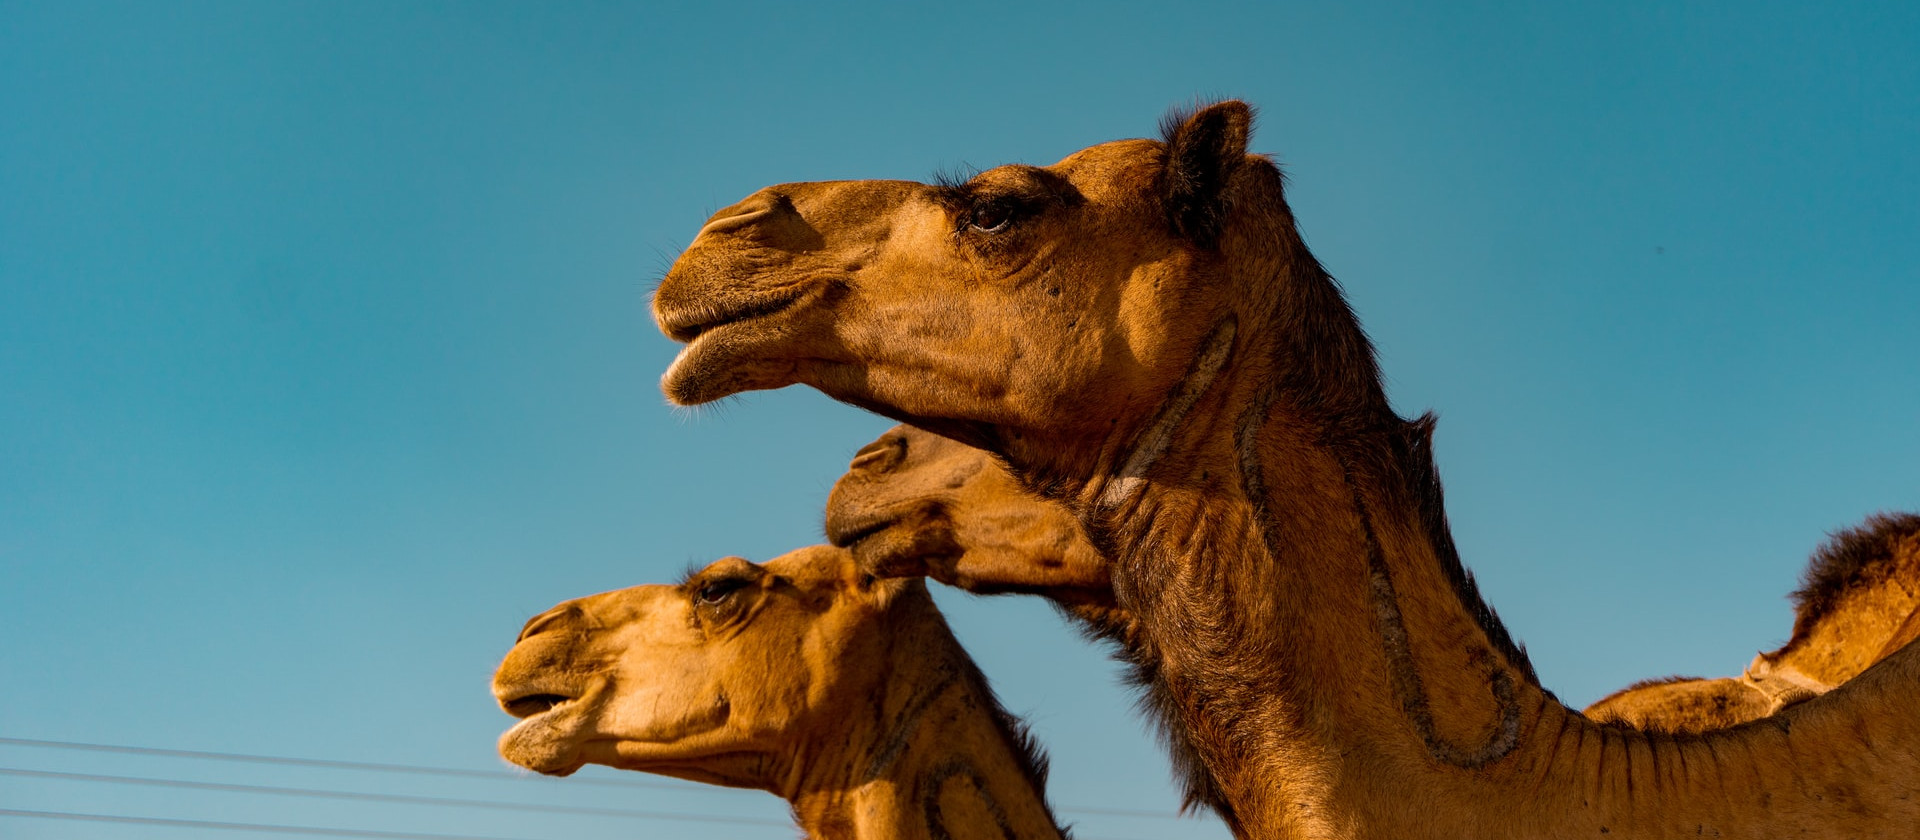 Two camels enjoying the sunshine